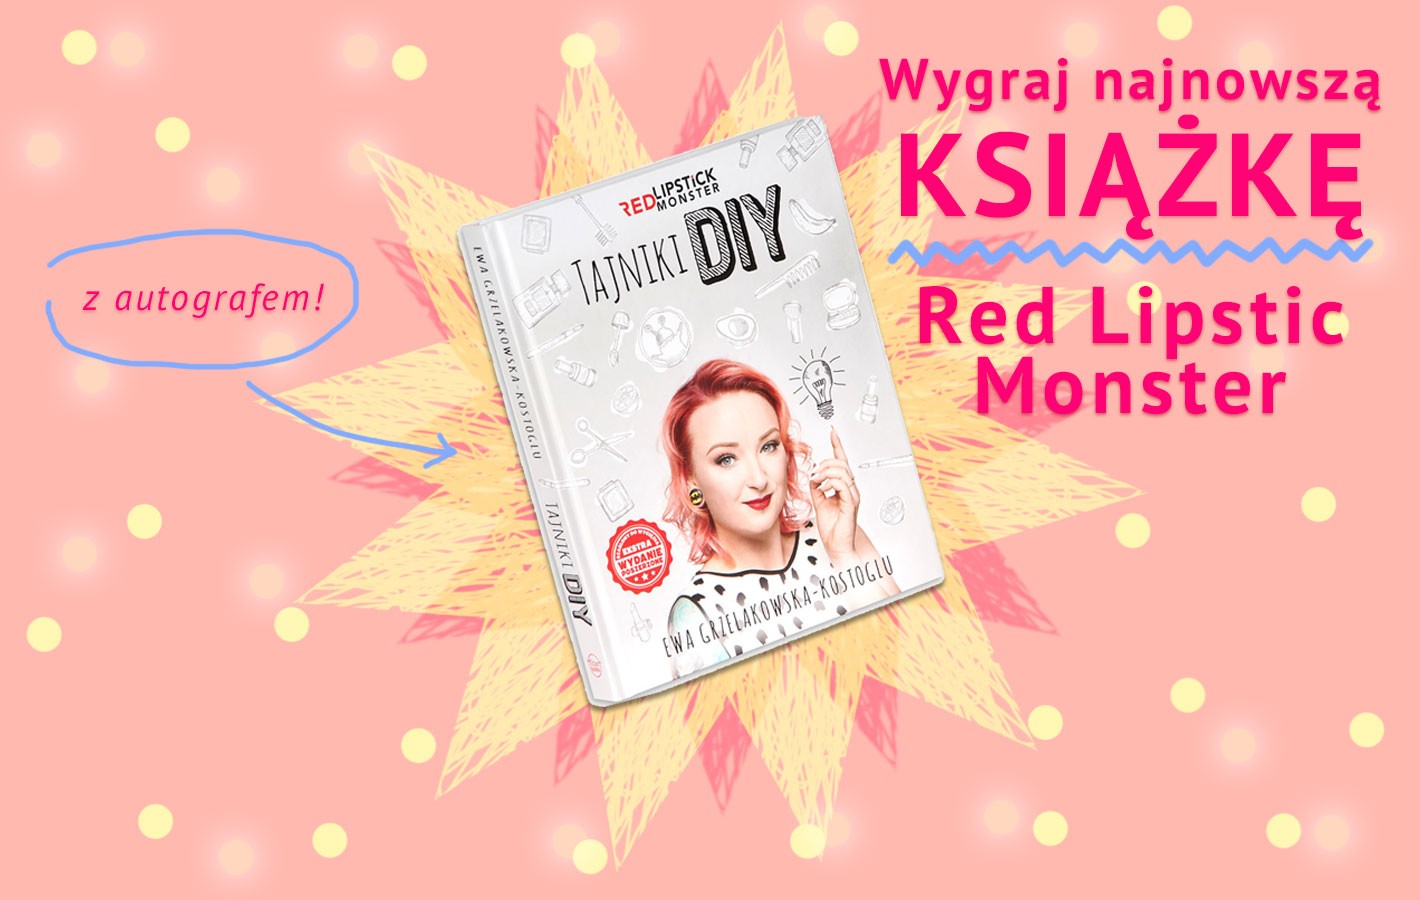 Regulamin konkursu “Wygraj najnowszą książkę Red Lipstick Monster z autografem!”